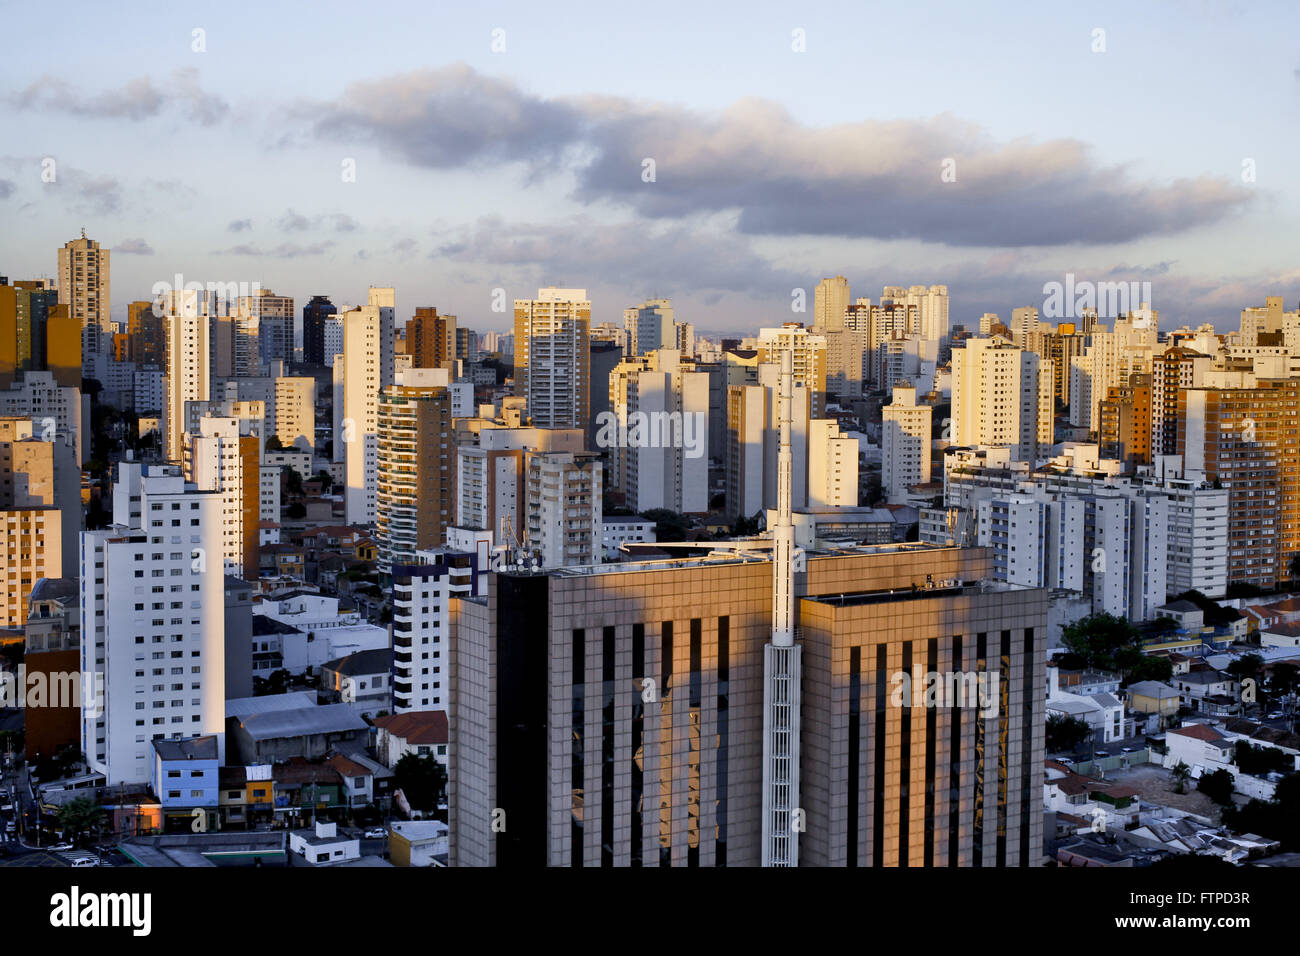 Ver el área metropolitana de la ciudad de Sao Paulo Foto de stock